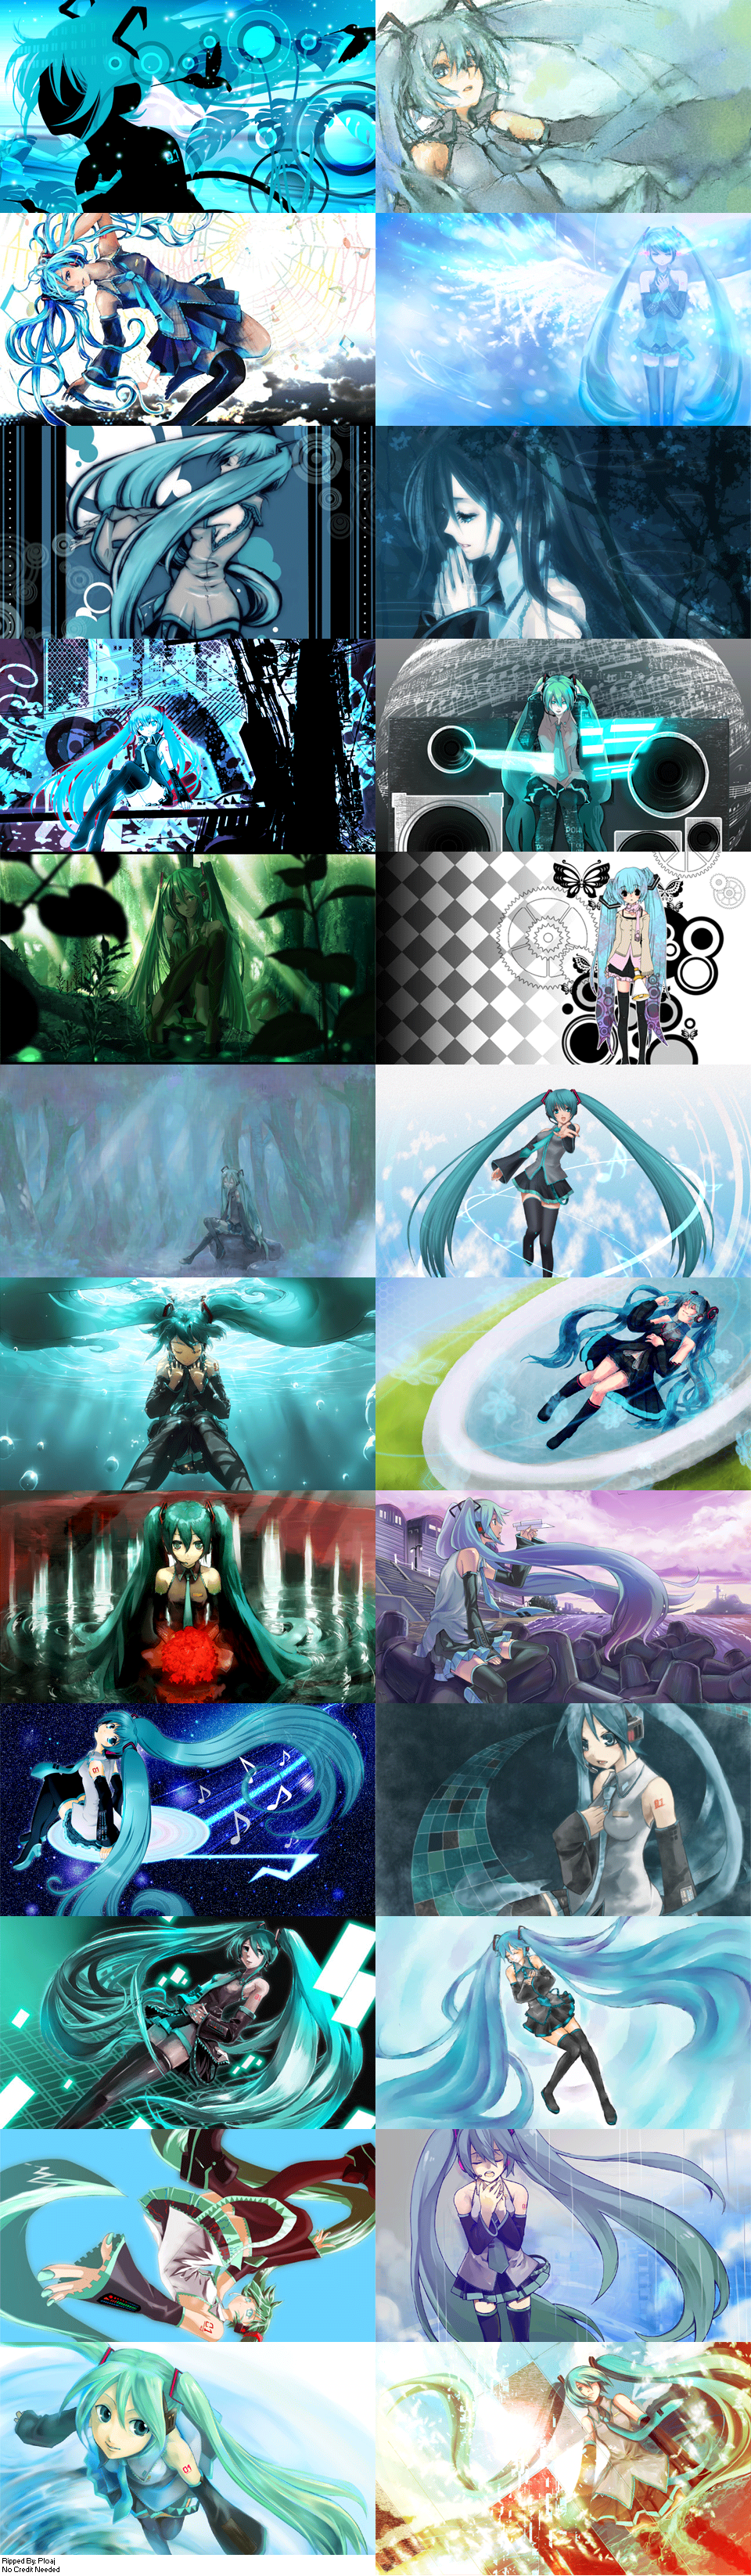 Hatsune Miku: Project DIVA - Edit Mode Images (Part 5)